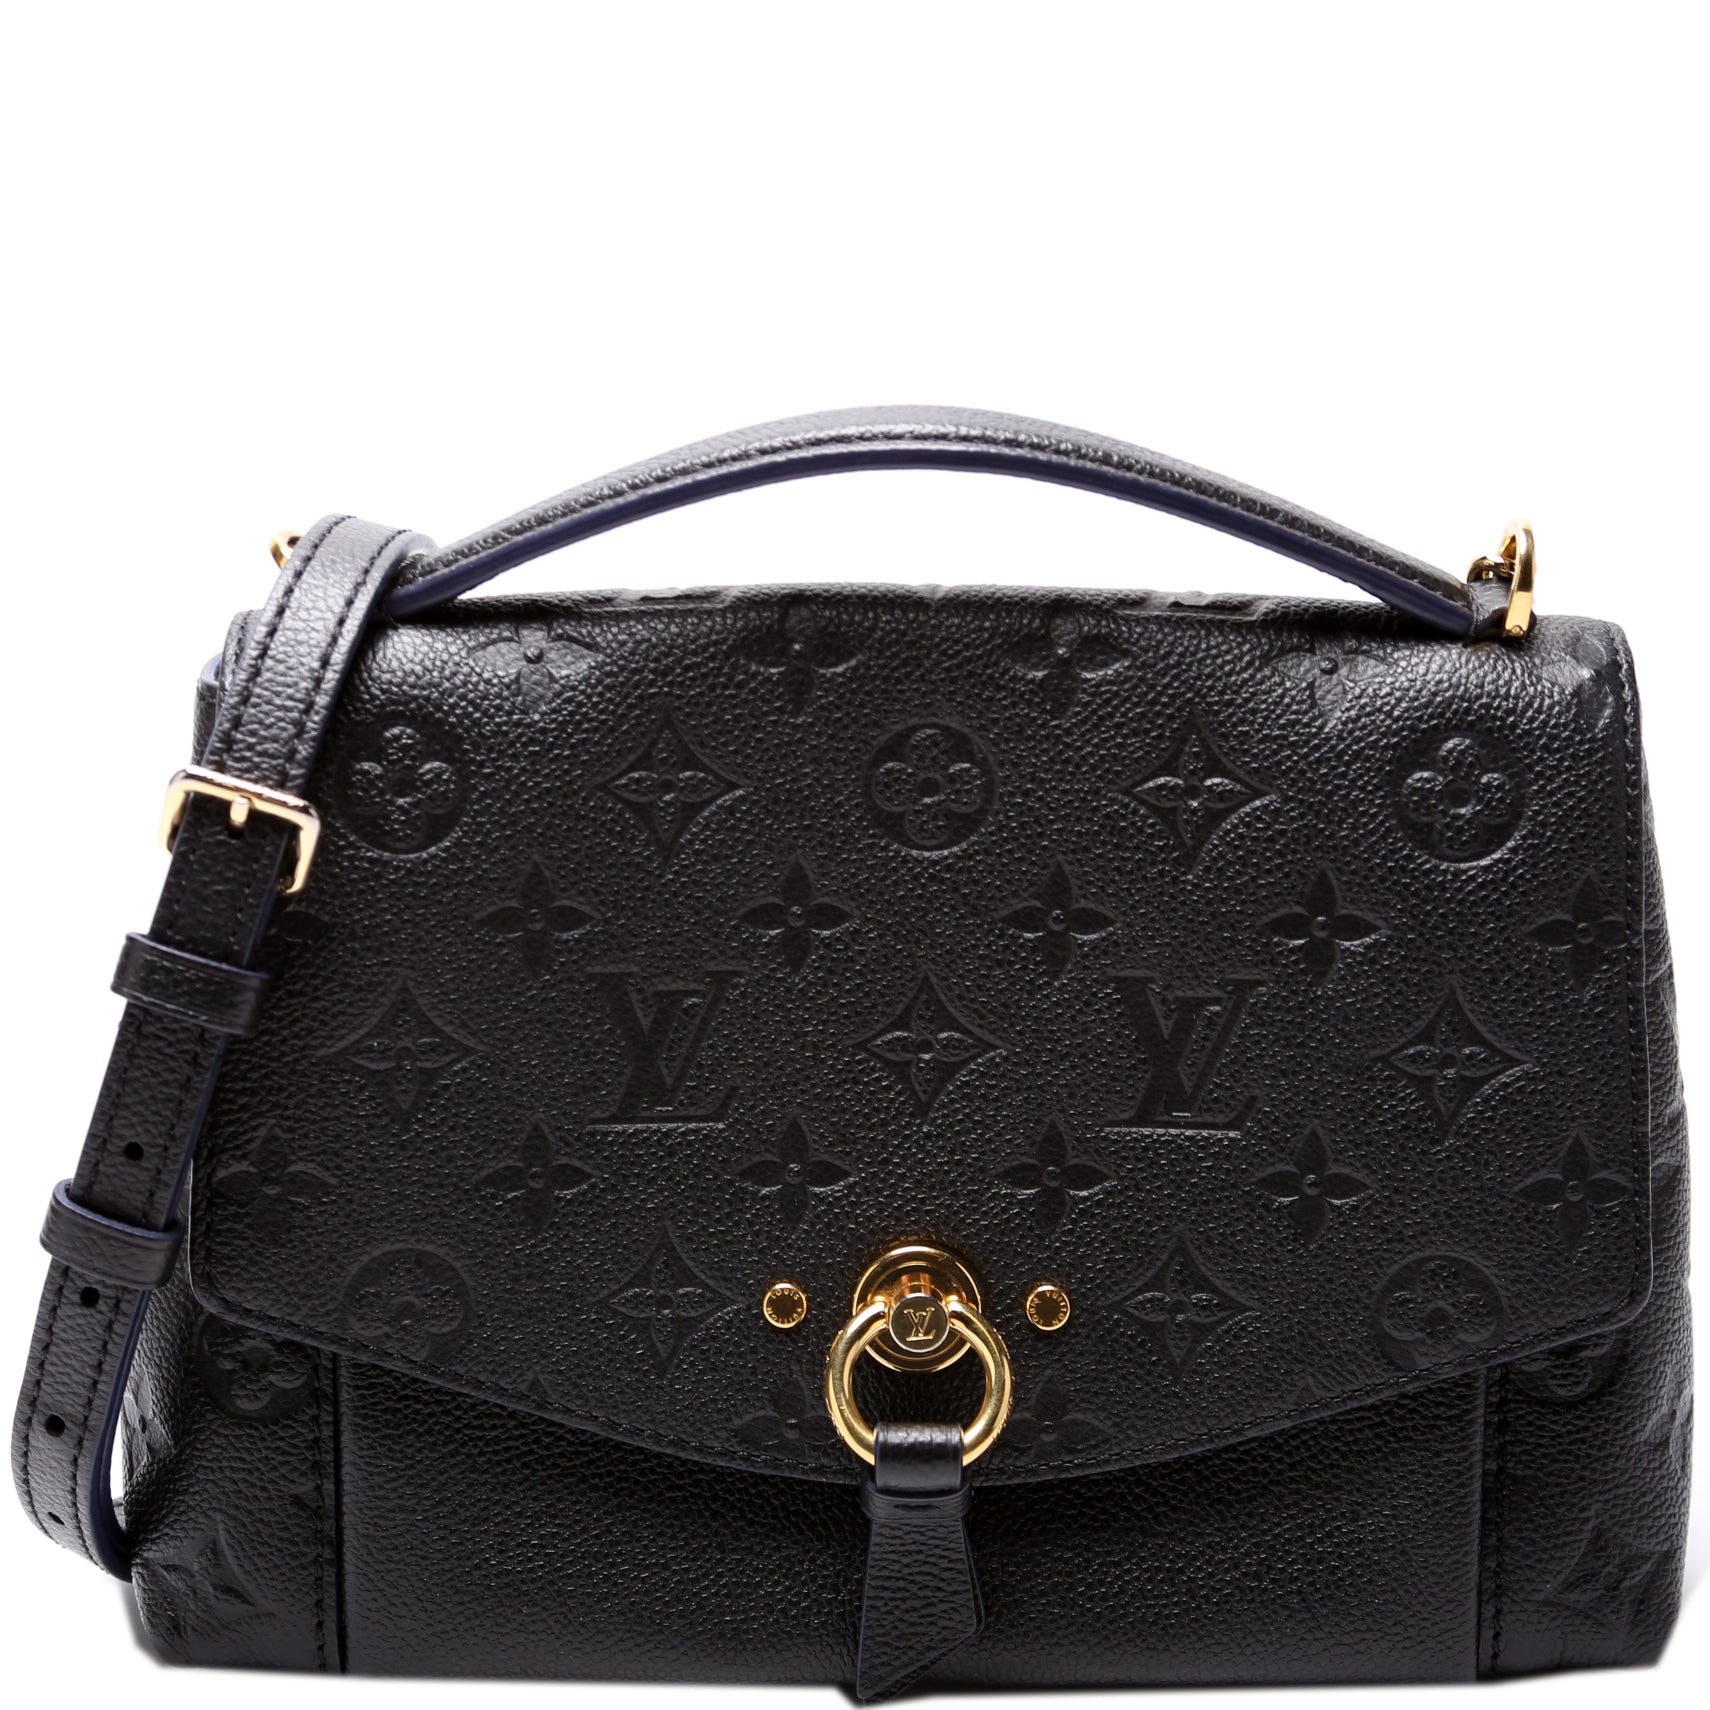 Blanchie BB Empreinte – Keeks Designer Handbags